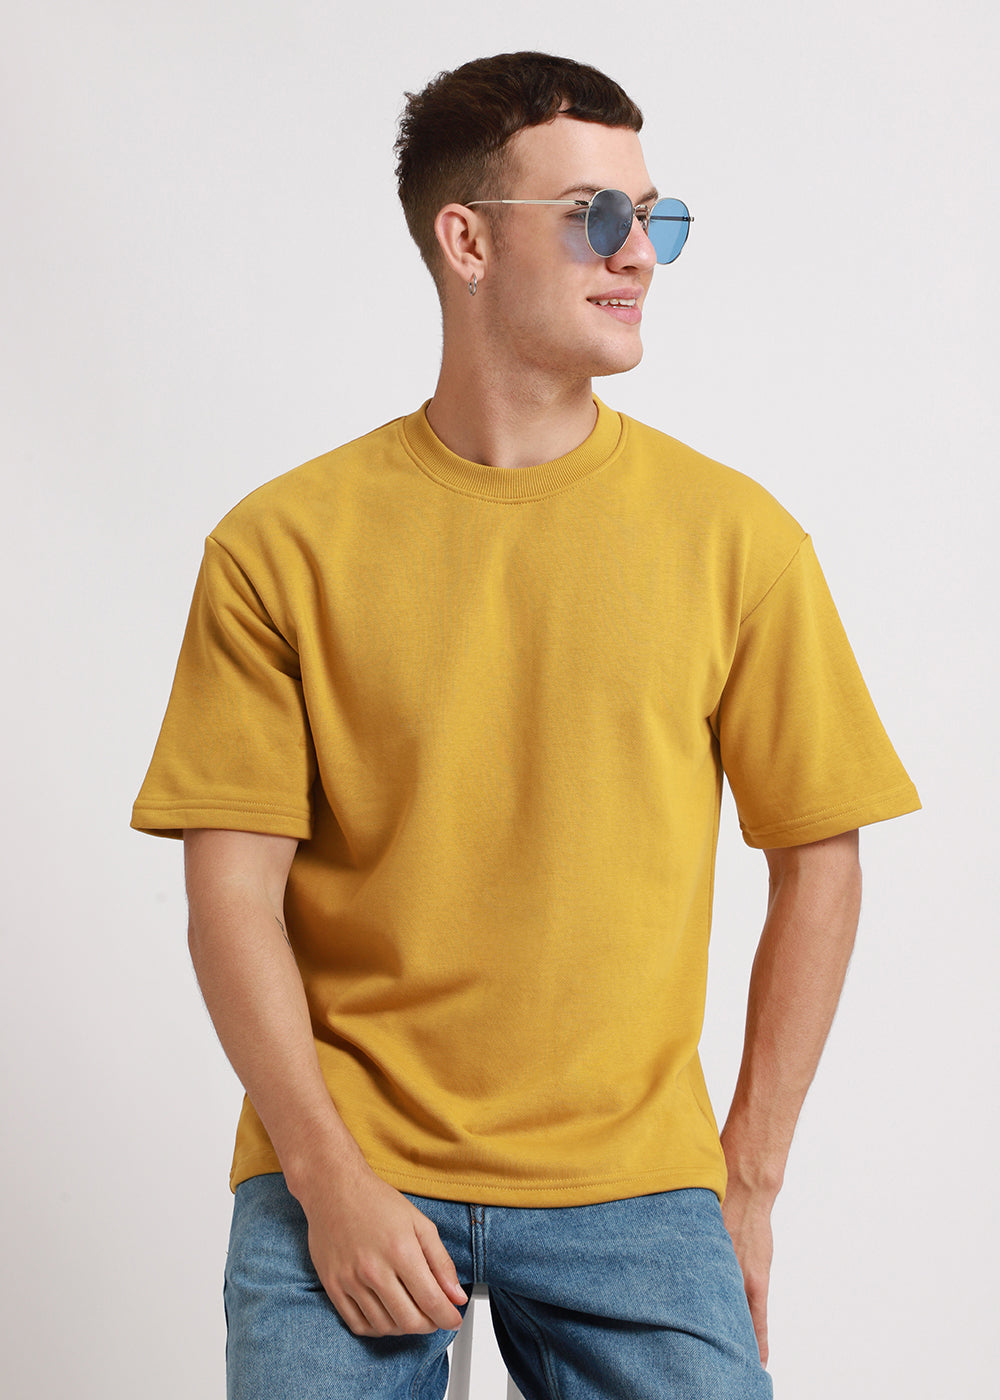 Canary Yellow Oversized Basic T-shirt